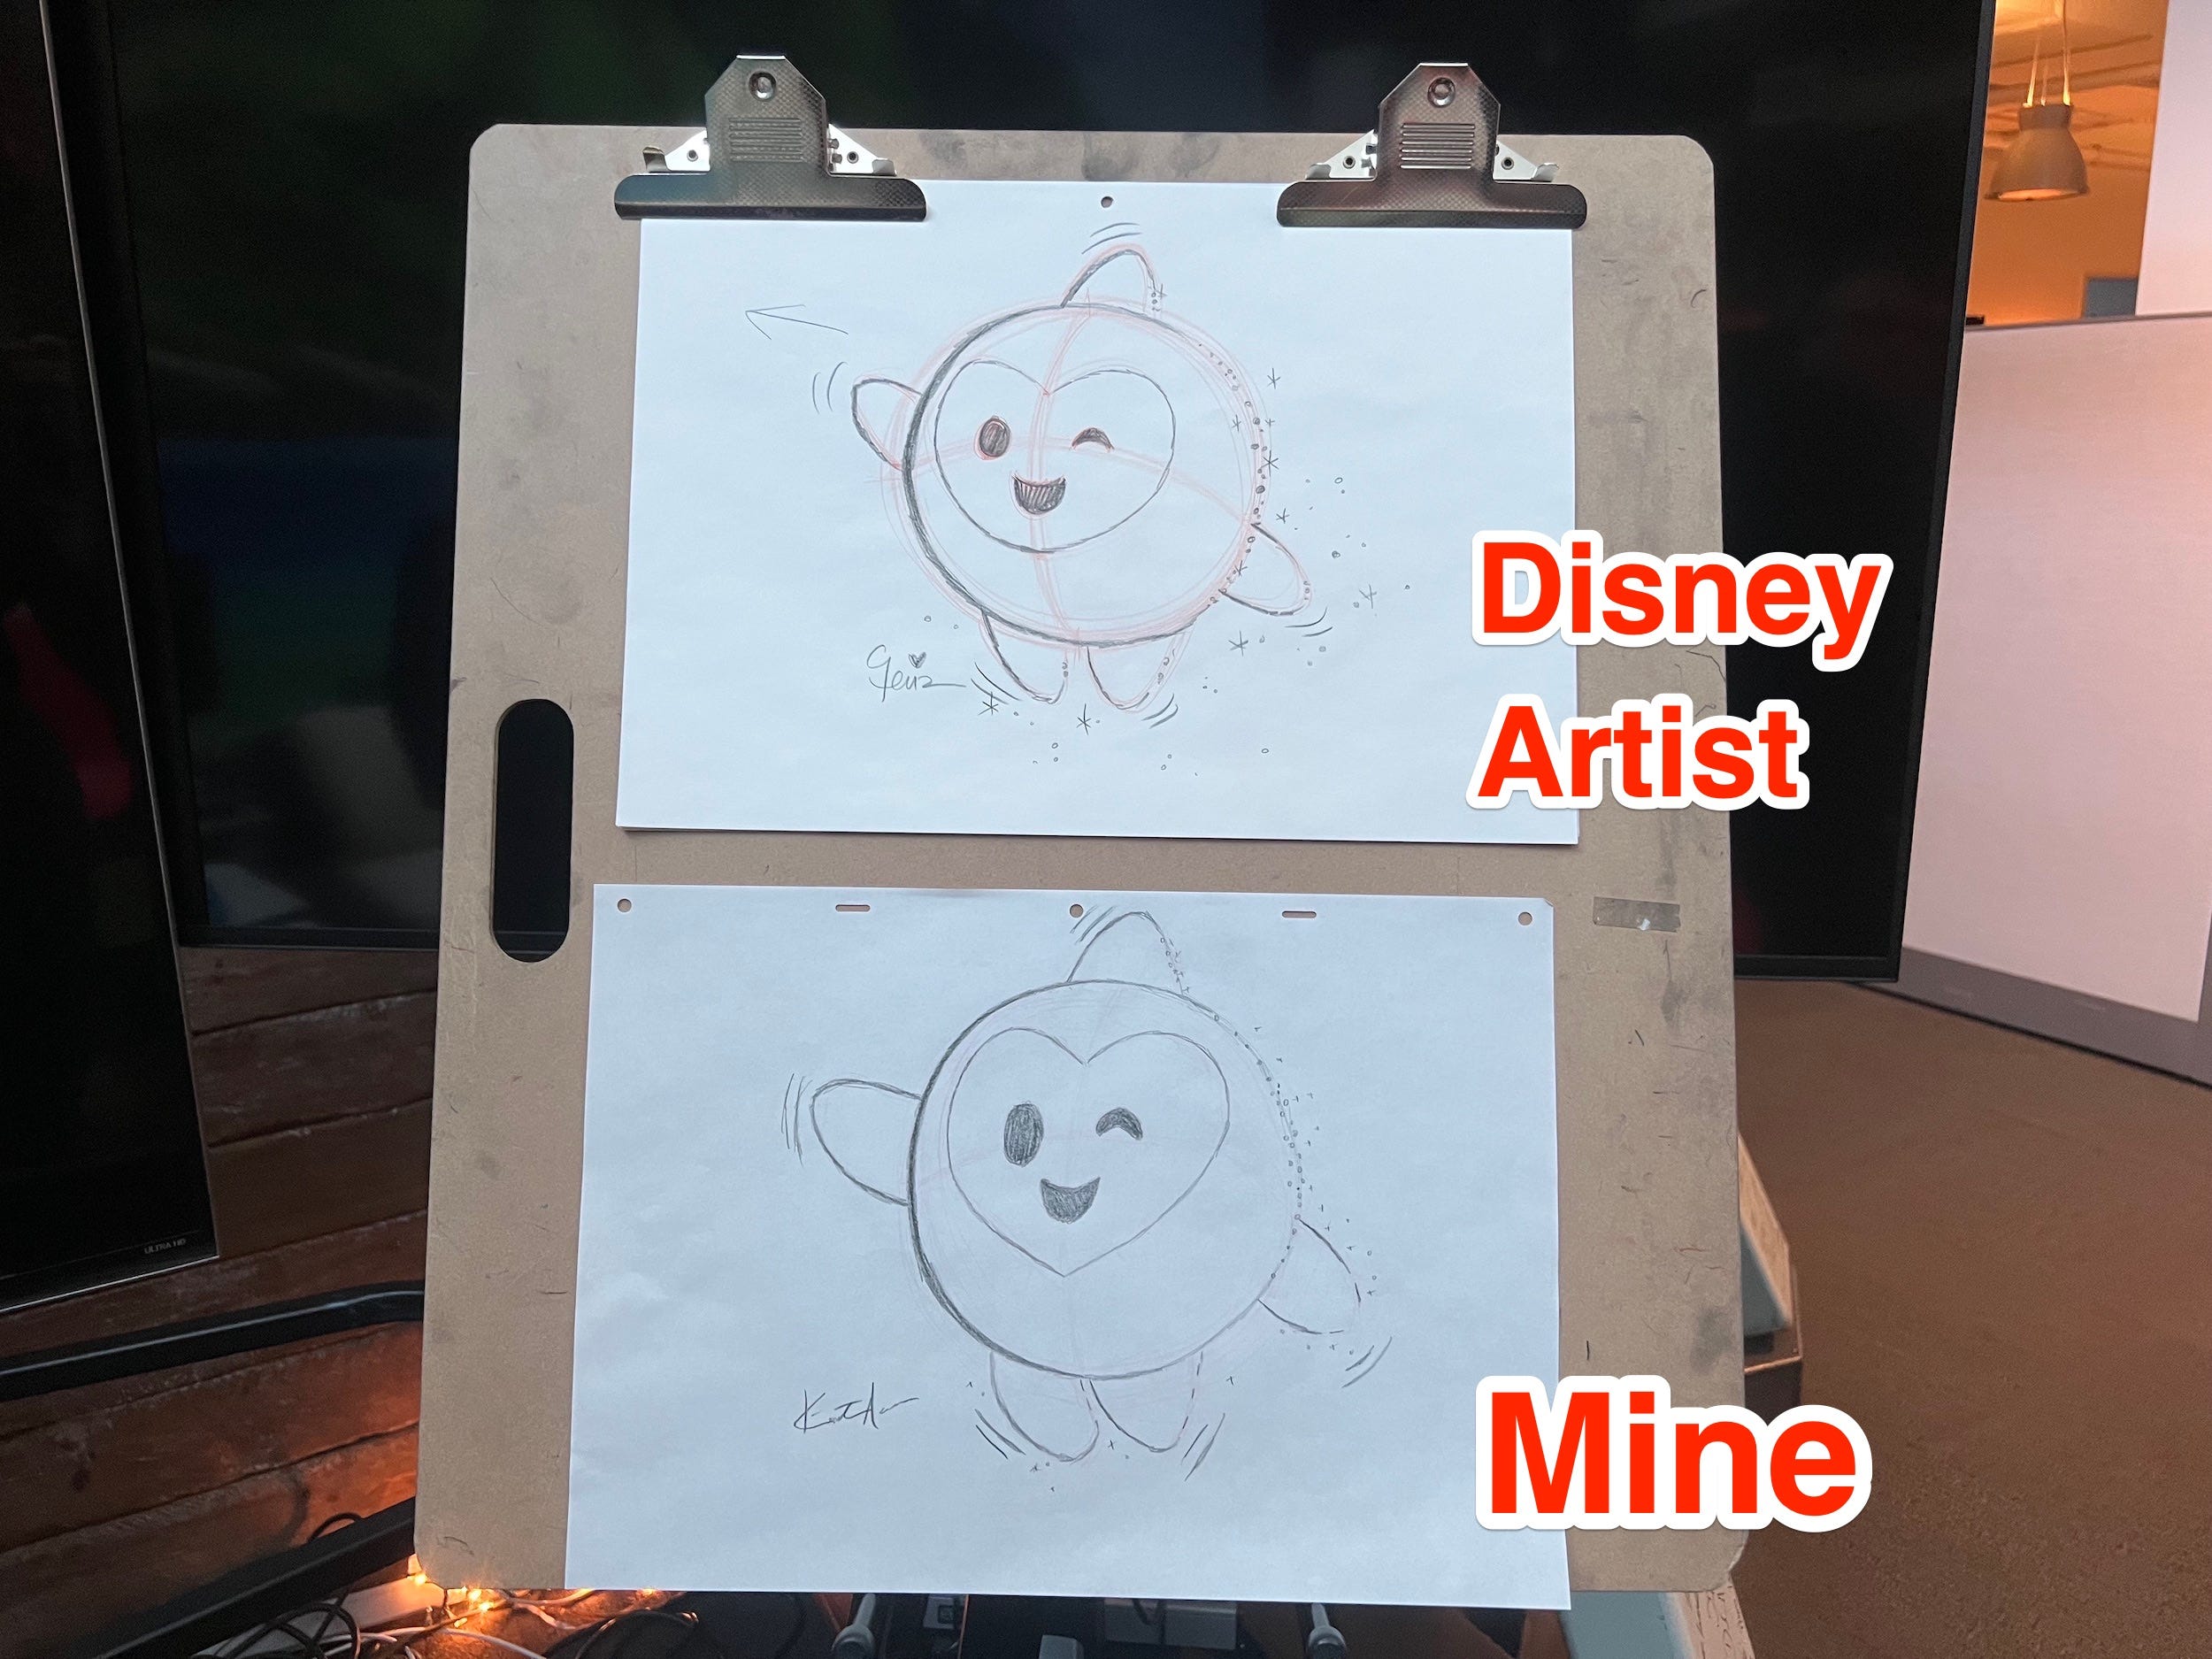 Disney-Künstler Star-Skizze gegen Kirsten Acuna